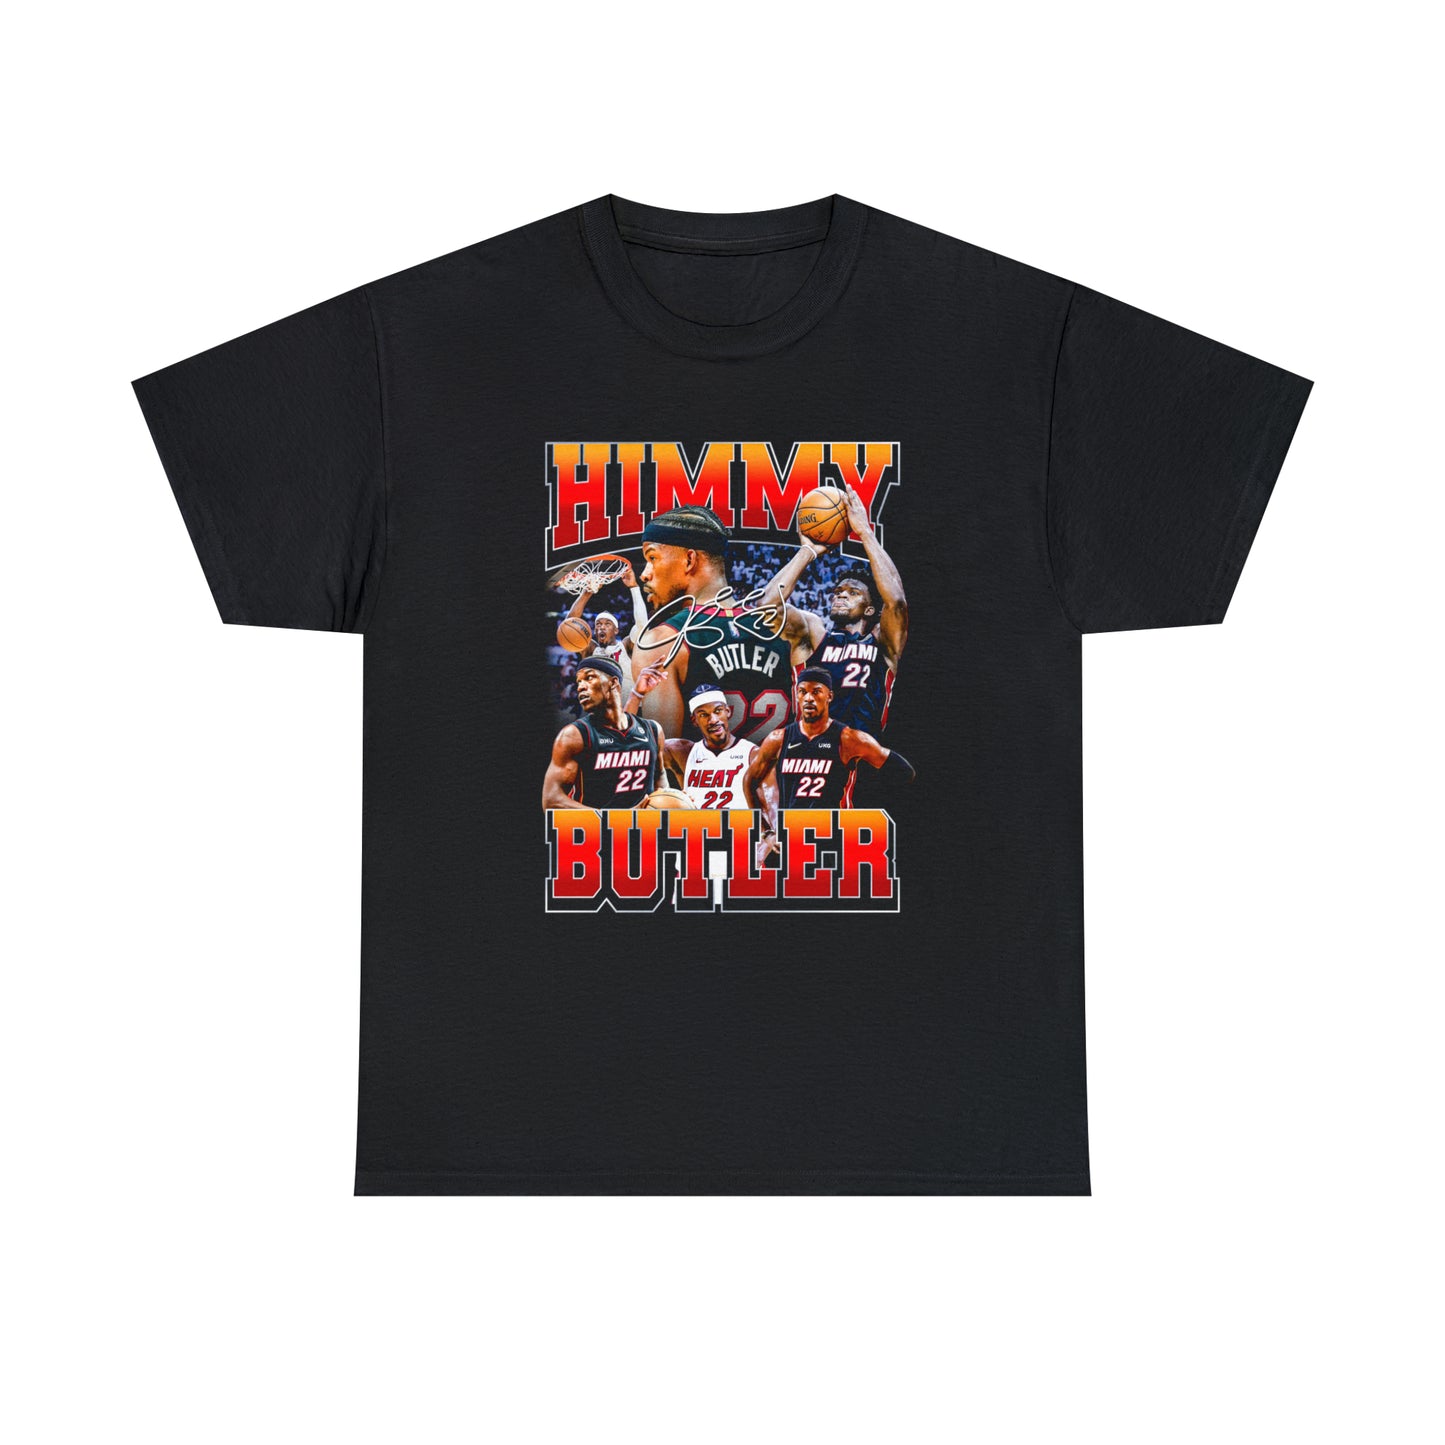 Himmy Butler T-Shirt!